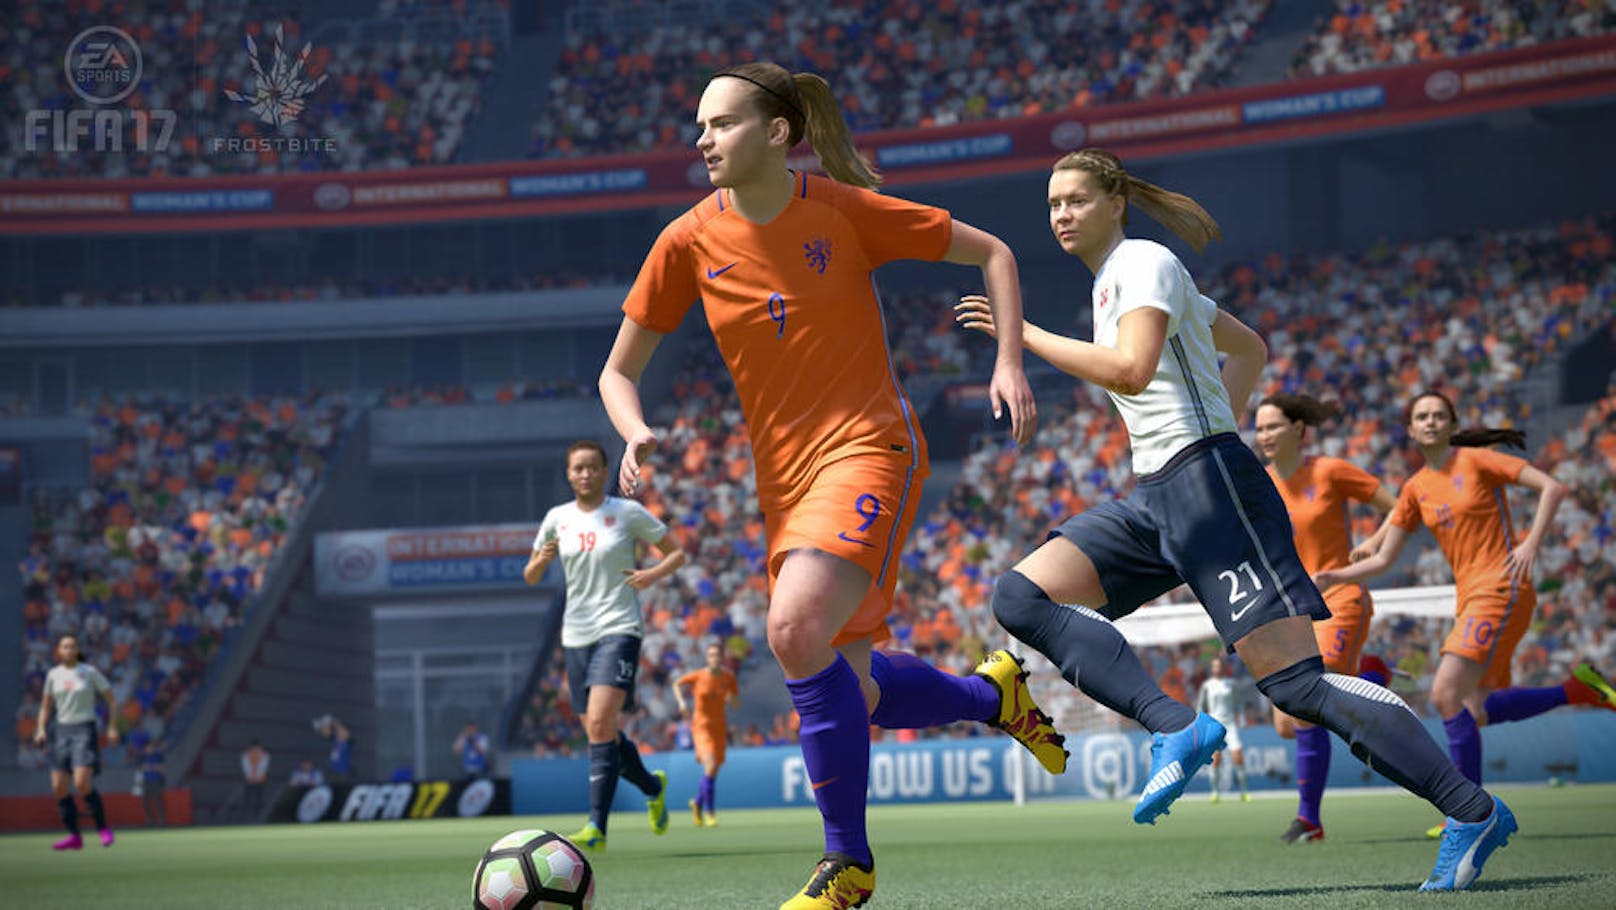 Mit FIFA 17 ist EA Sports wieder einmal ein Schritt in die richtige Richtung gelungen.